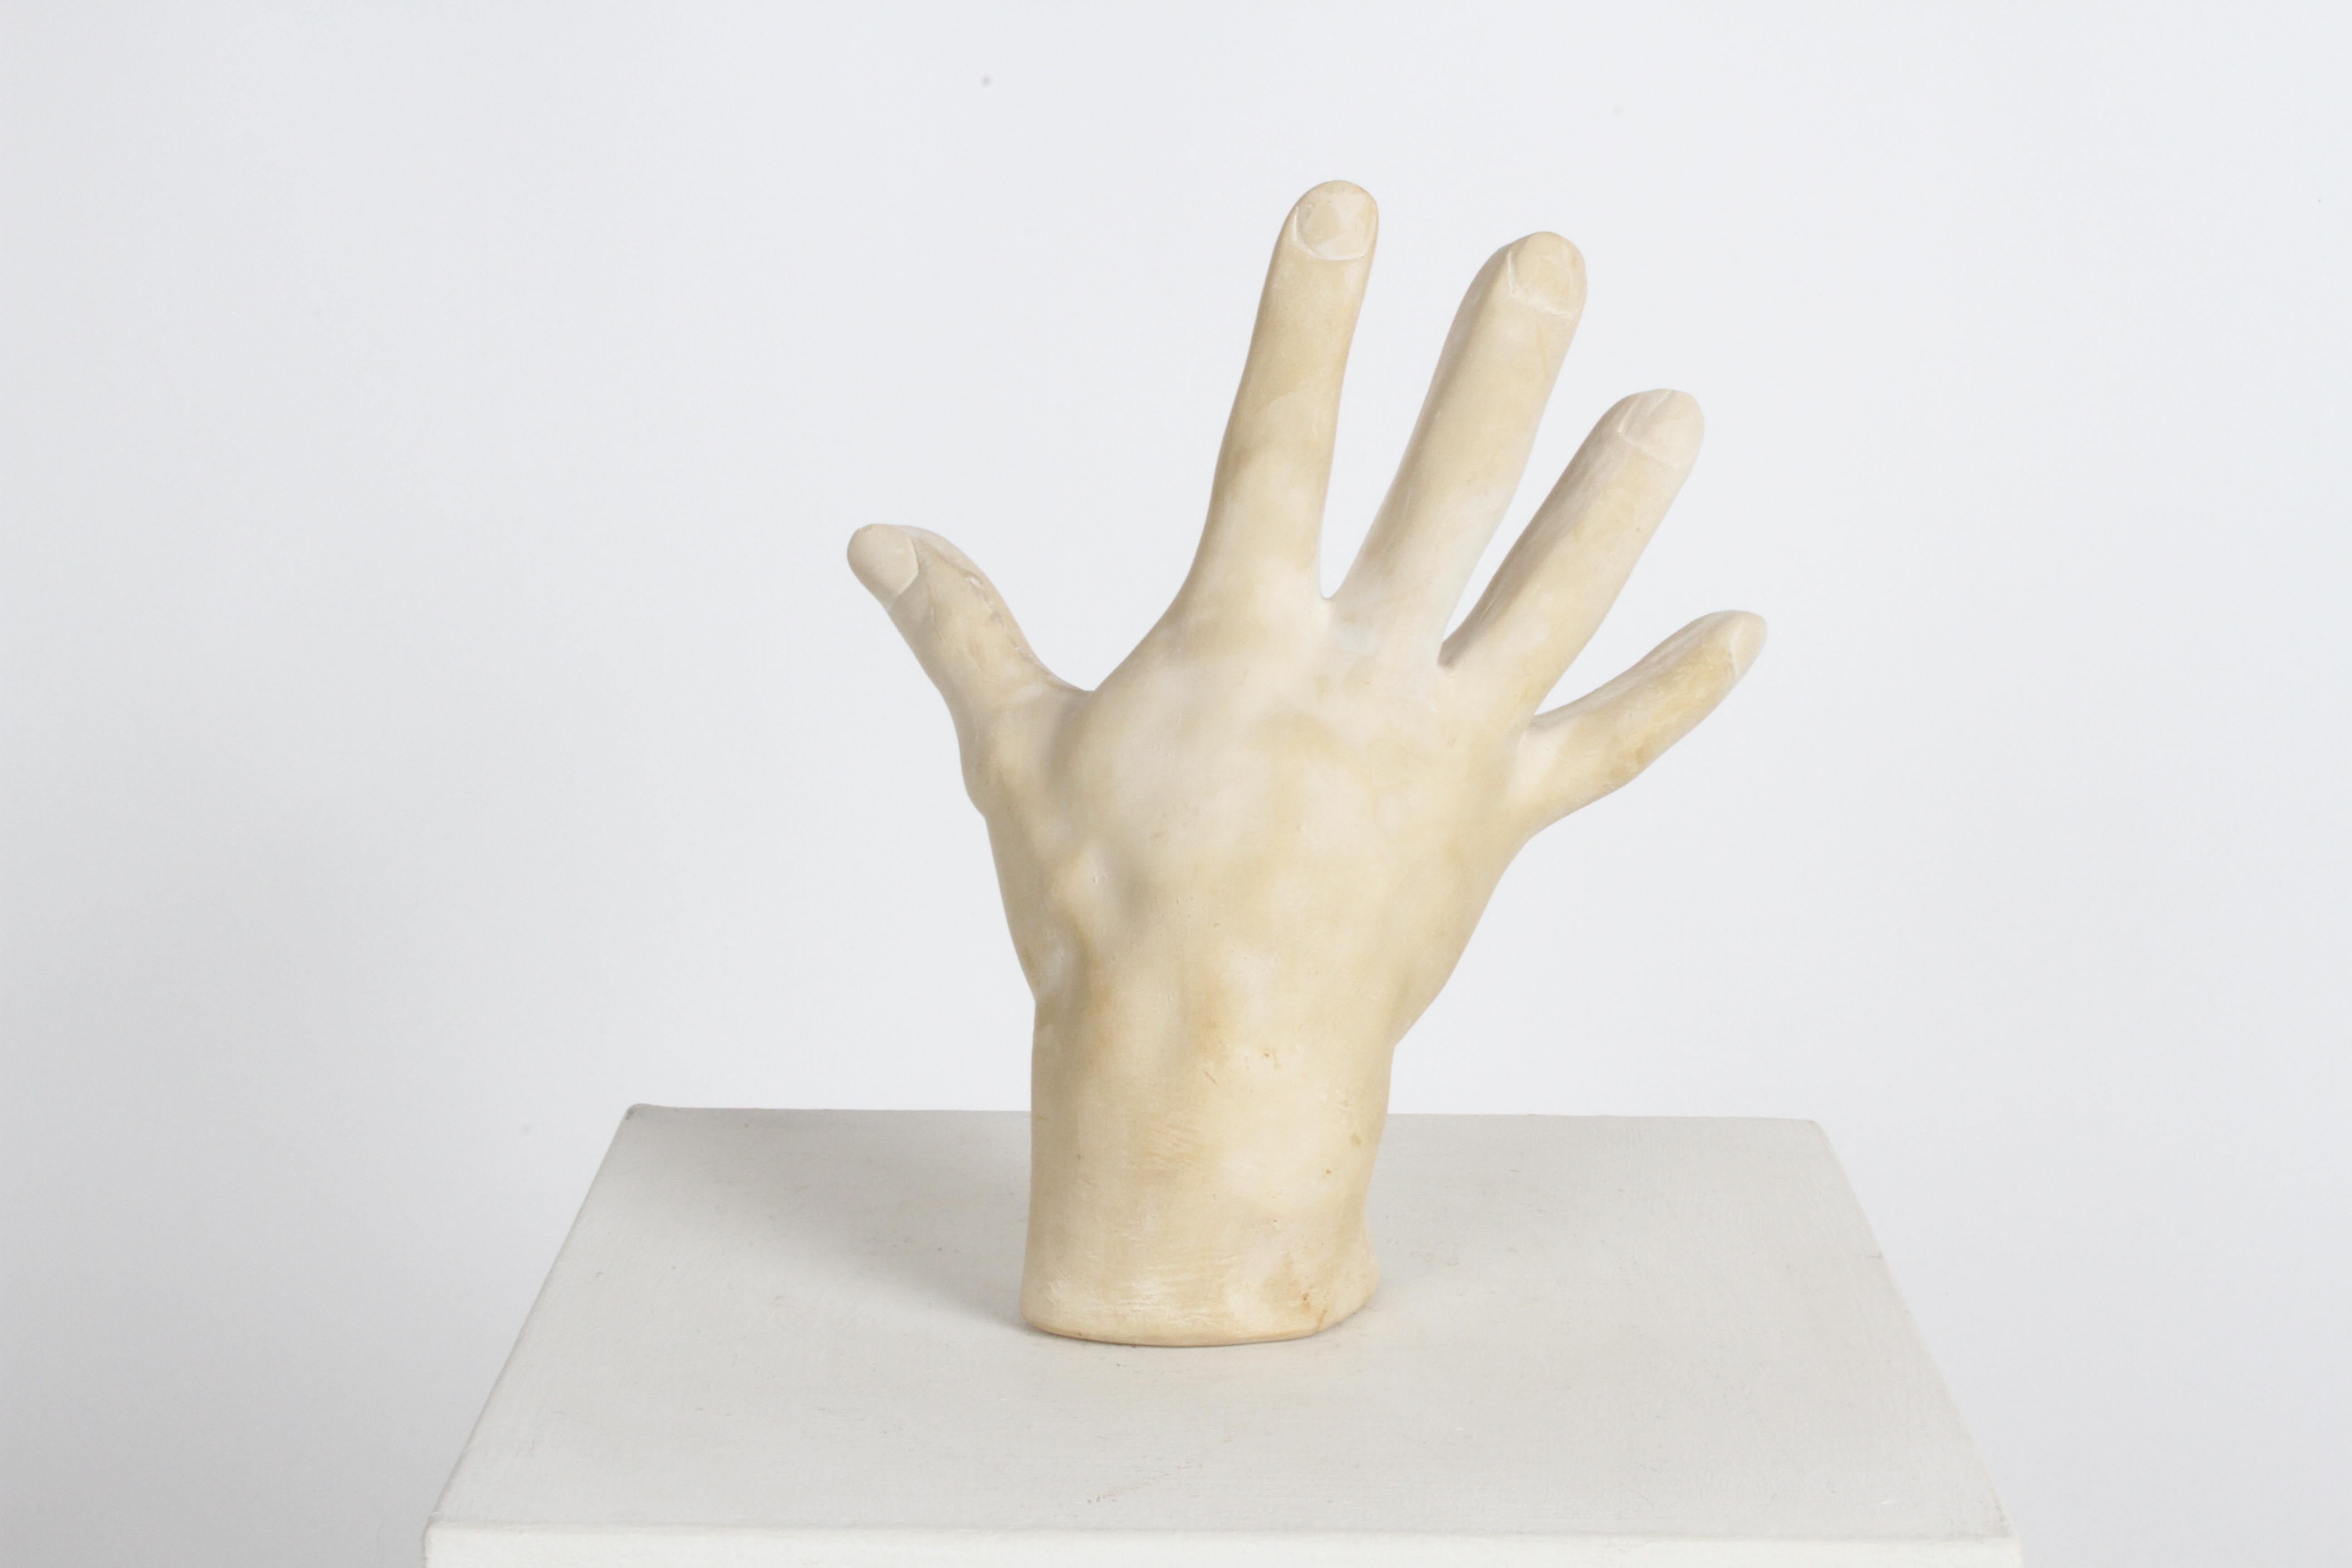 Überlebensgroße Handskulptur aus Gips aus den 1970er Jahren, möglicherweise eine Künstler- oder Handstudie, im Stil von John Dickinson.
Der Putz hat eine leichte Bräunung über dem weißen Putz. Keine Brüche oder Schäden festgestellt.